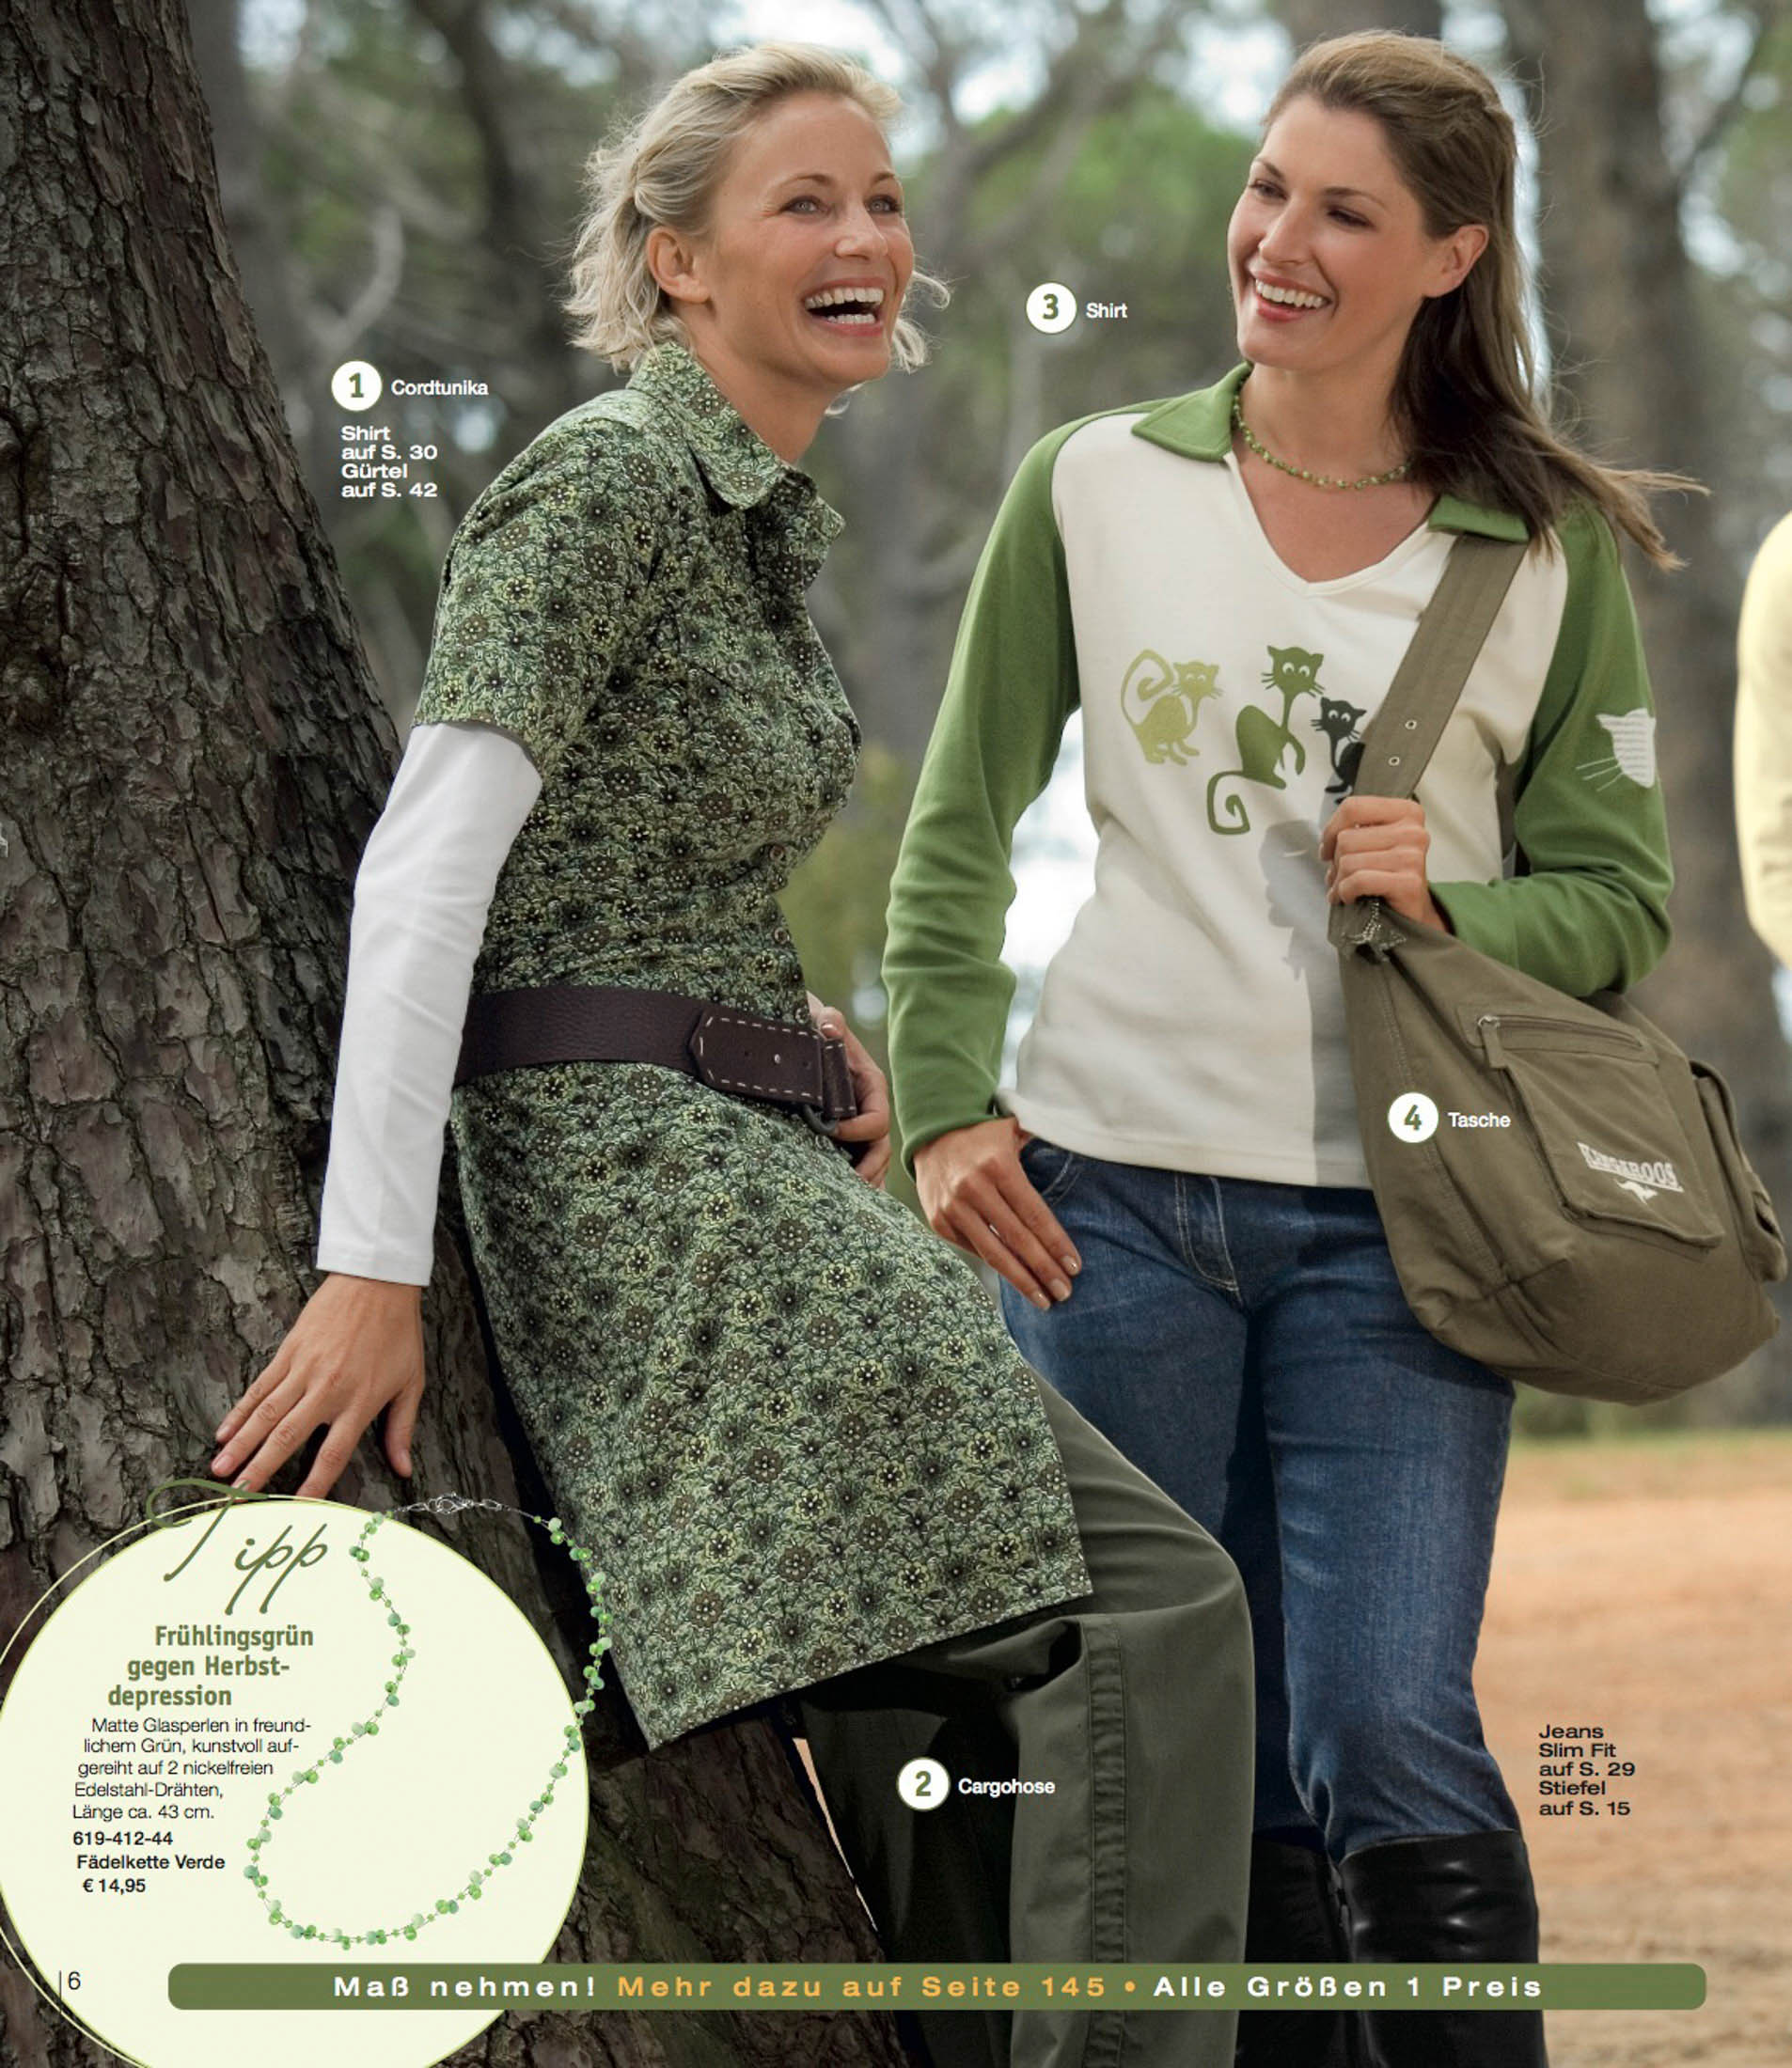 Zwei Frauen, eine Blondine und eine Brünette, lachen zusammen, während sie in einer Parklandschaft an einem Baum lehnen und legere Frühlingskleidung tragen. Die Blondine trägt ein geblümtes Kleid, die Brünette ein grünes Oberteil und eine Jacke. © Fotografie Tomas Rodriguez